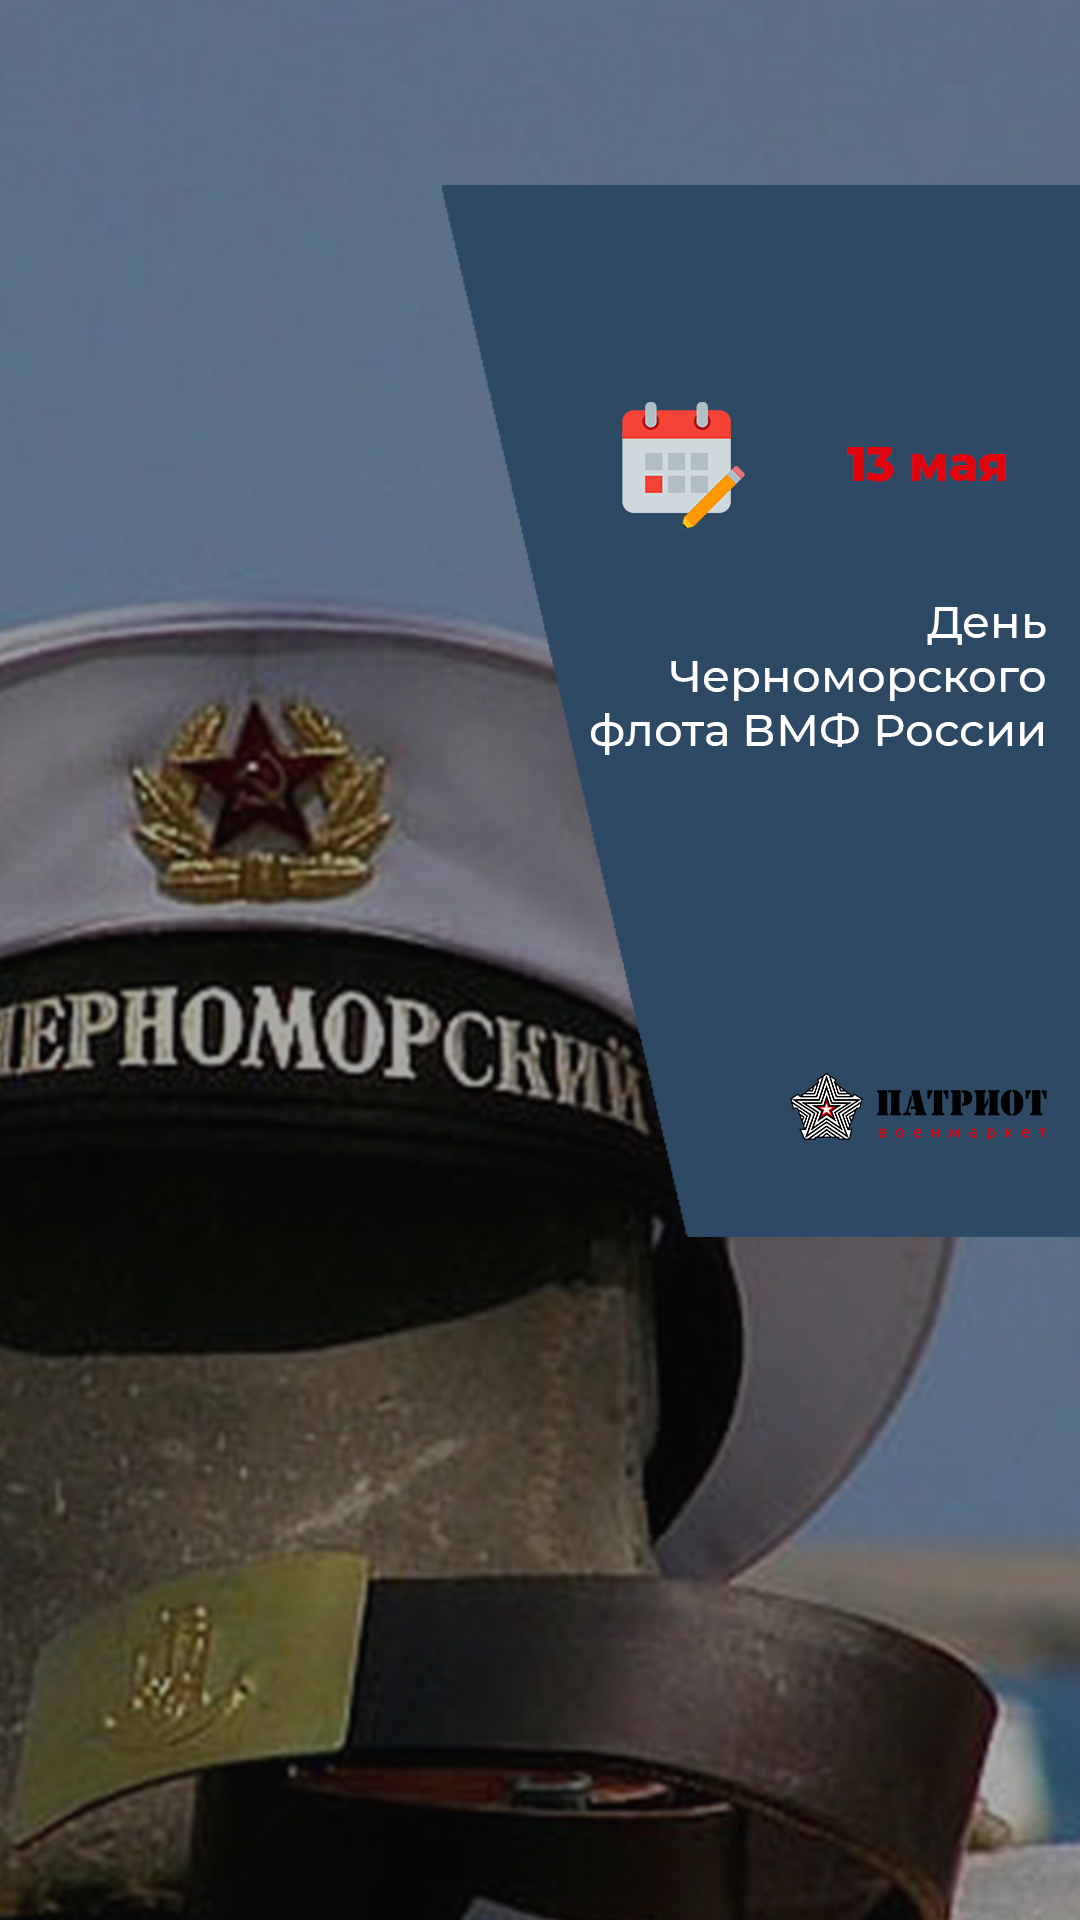 13 мая - День Черноморского флота ВМФ Росси